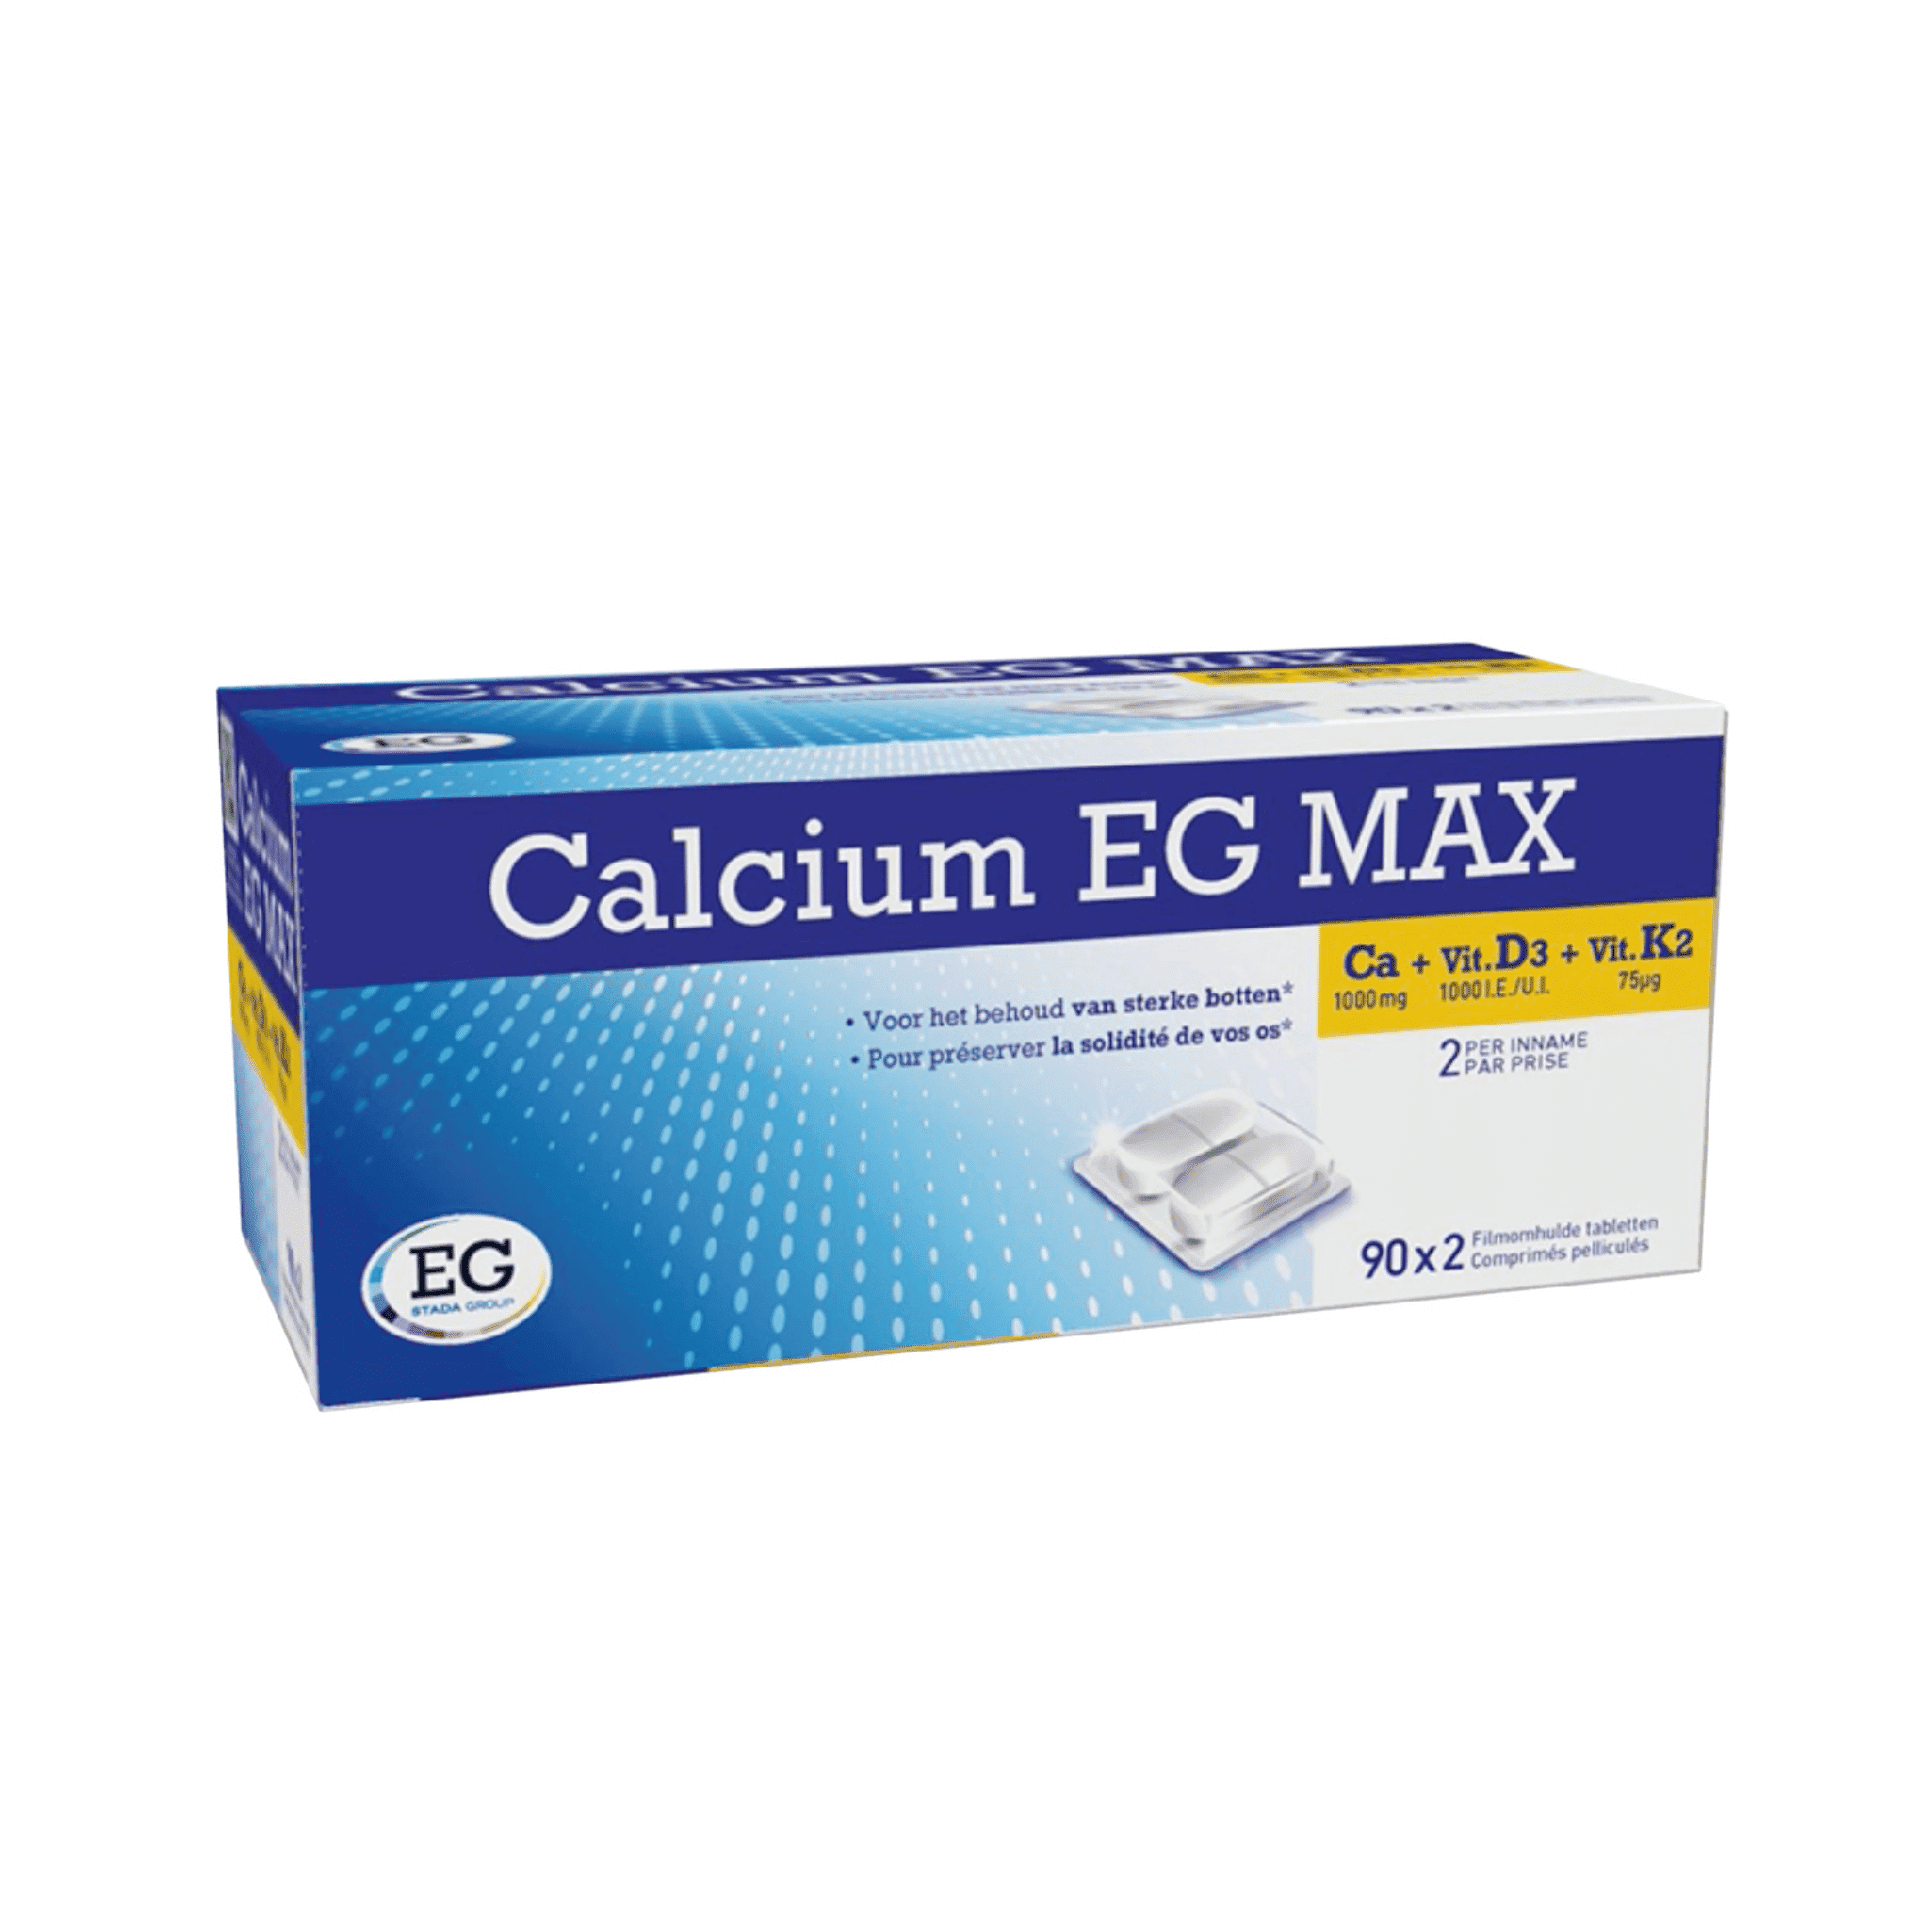 Calcium EG MAX